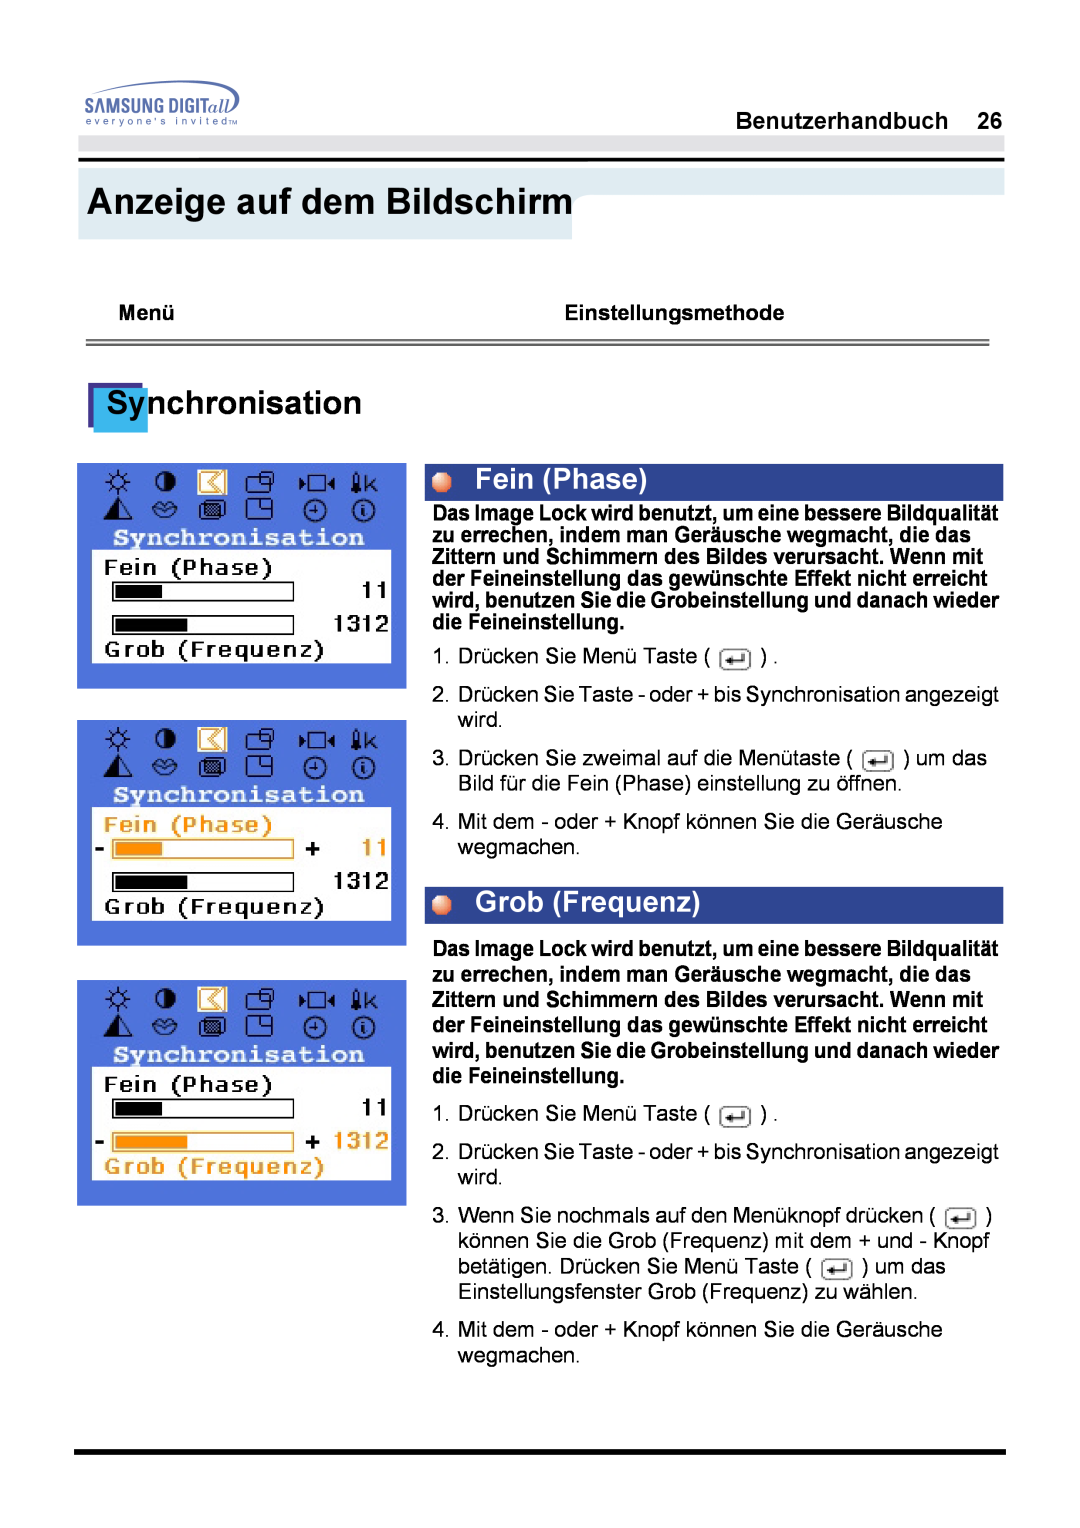 Samsung GH17LSAB/EDC, GH17LSSS Synchronisation, Fein Phase, Grob Frequenz, Anzeige auf dem Bildschirm, Benutzerhandbuch 